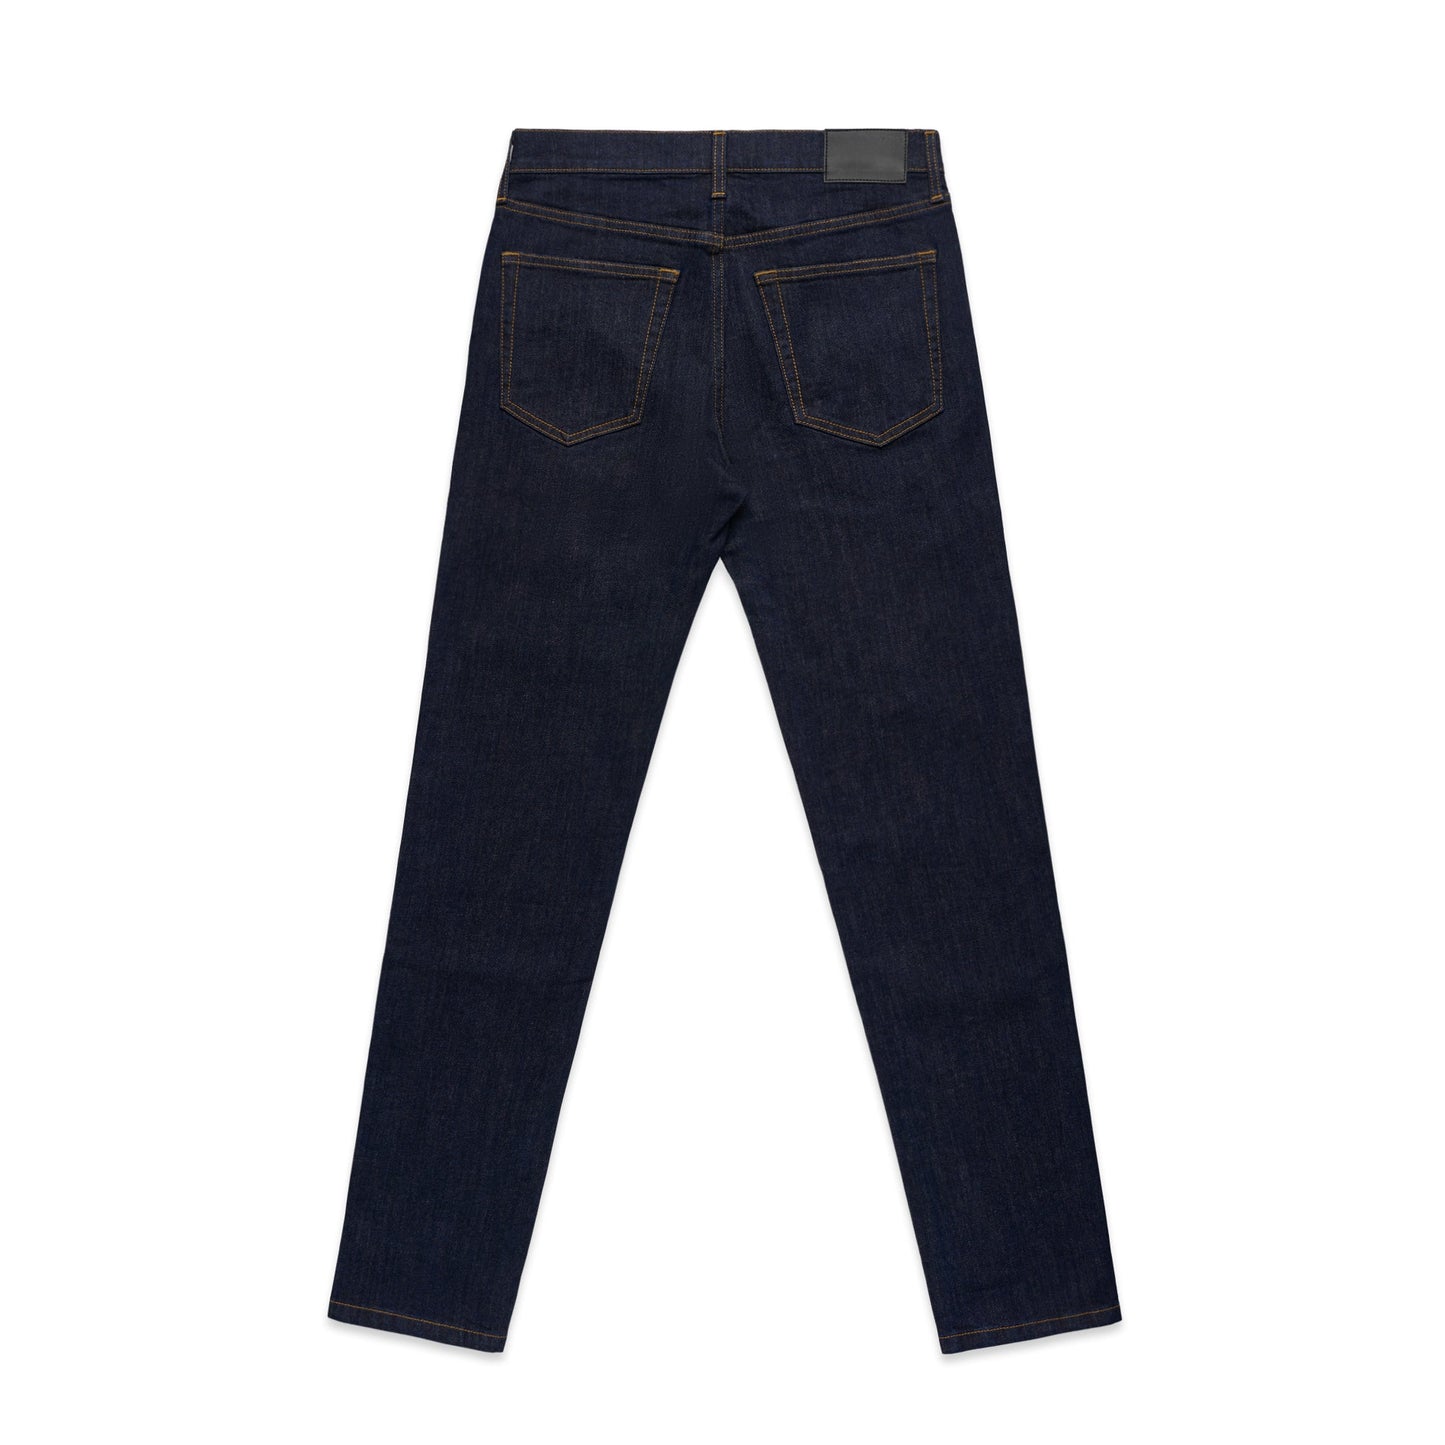 Ascolour Mens Standard Jeans(5801)